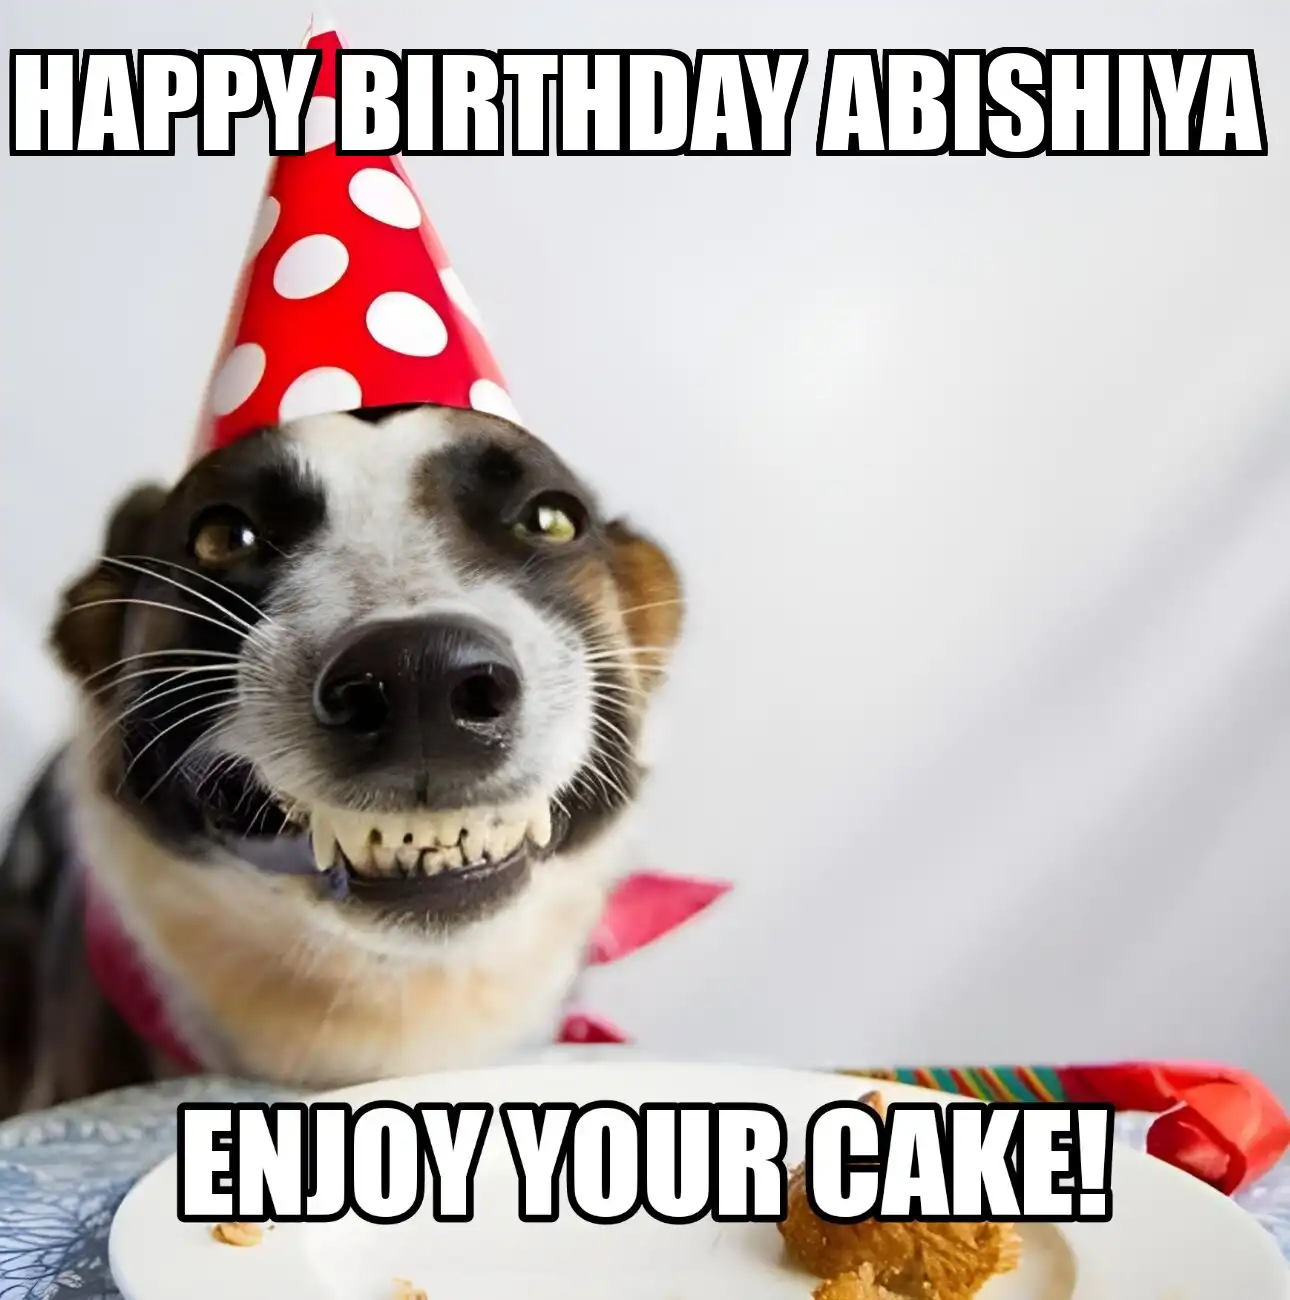 Happy Birthday Abishiya Enjoy Your Cake Dog Meme